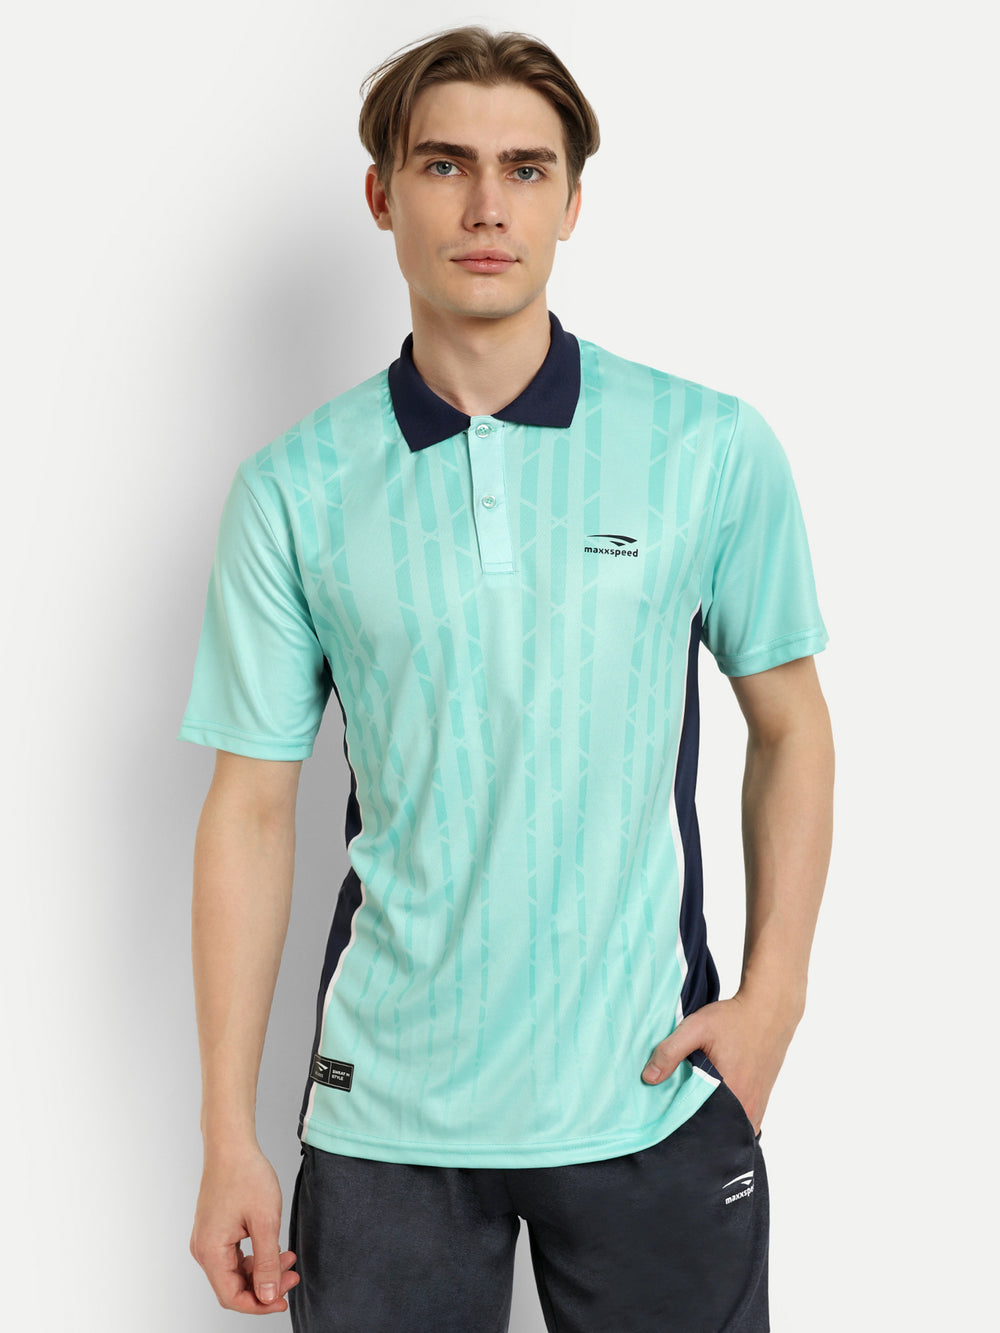 Neon Blue Polo badminton Tshirt